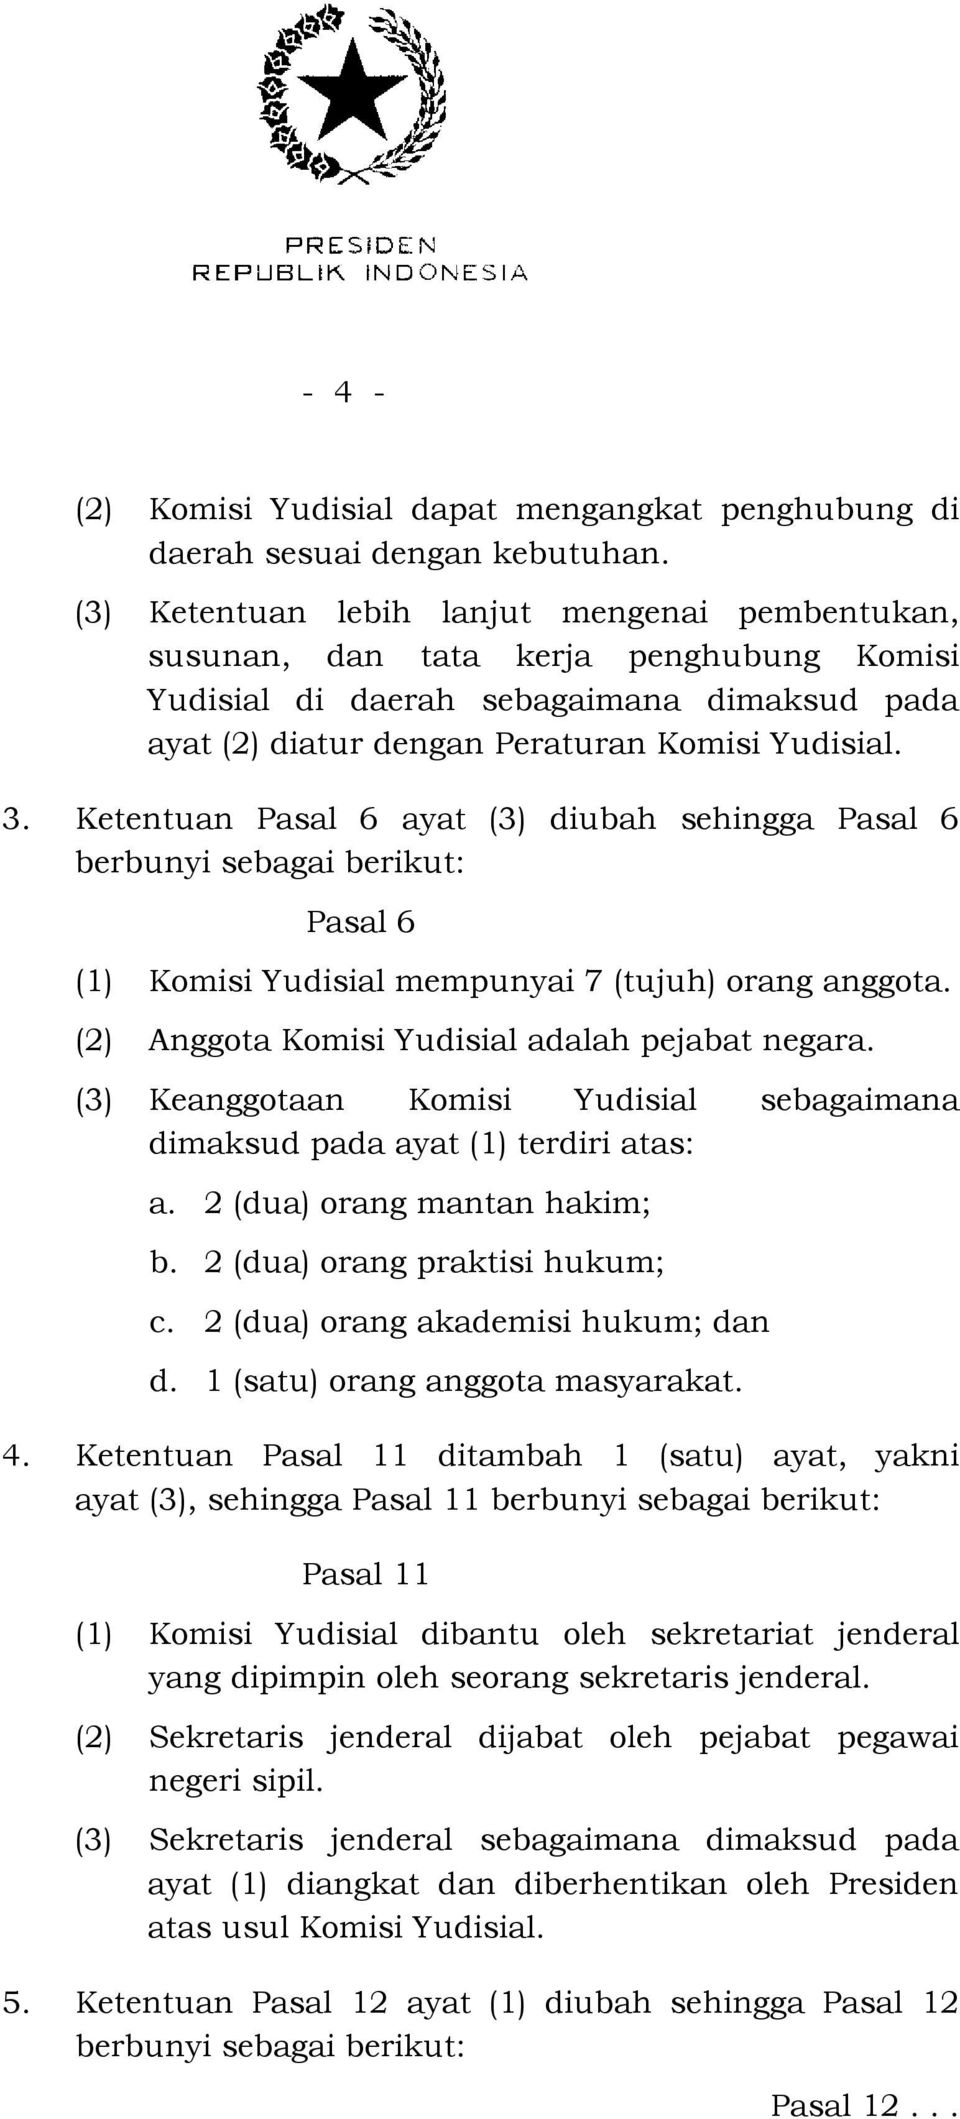 Ketentuan Pasal 6 ayat (3) diubah sehingga Pasal 6 berbunyi sebagai berikut: Pasal 6 (1) Komisi Yudisial mempunyai 7 (tujuh) orang anggota. (2) Anggota Komisi Yudisial adalah pejabat negara.